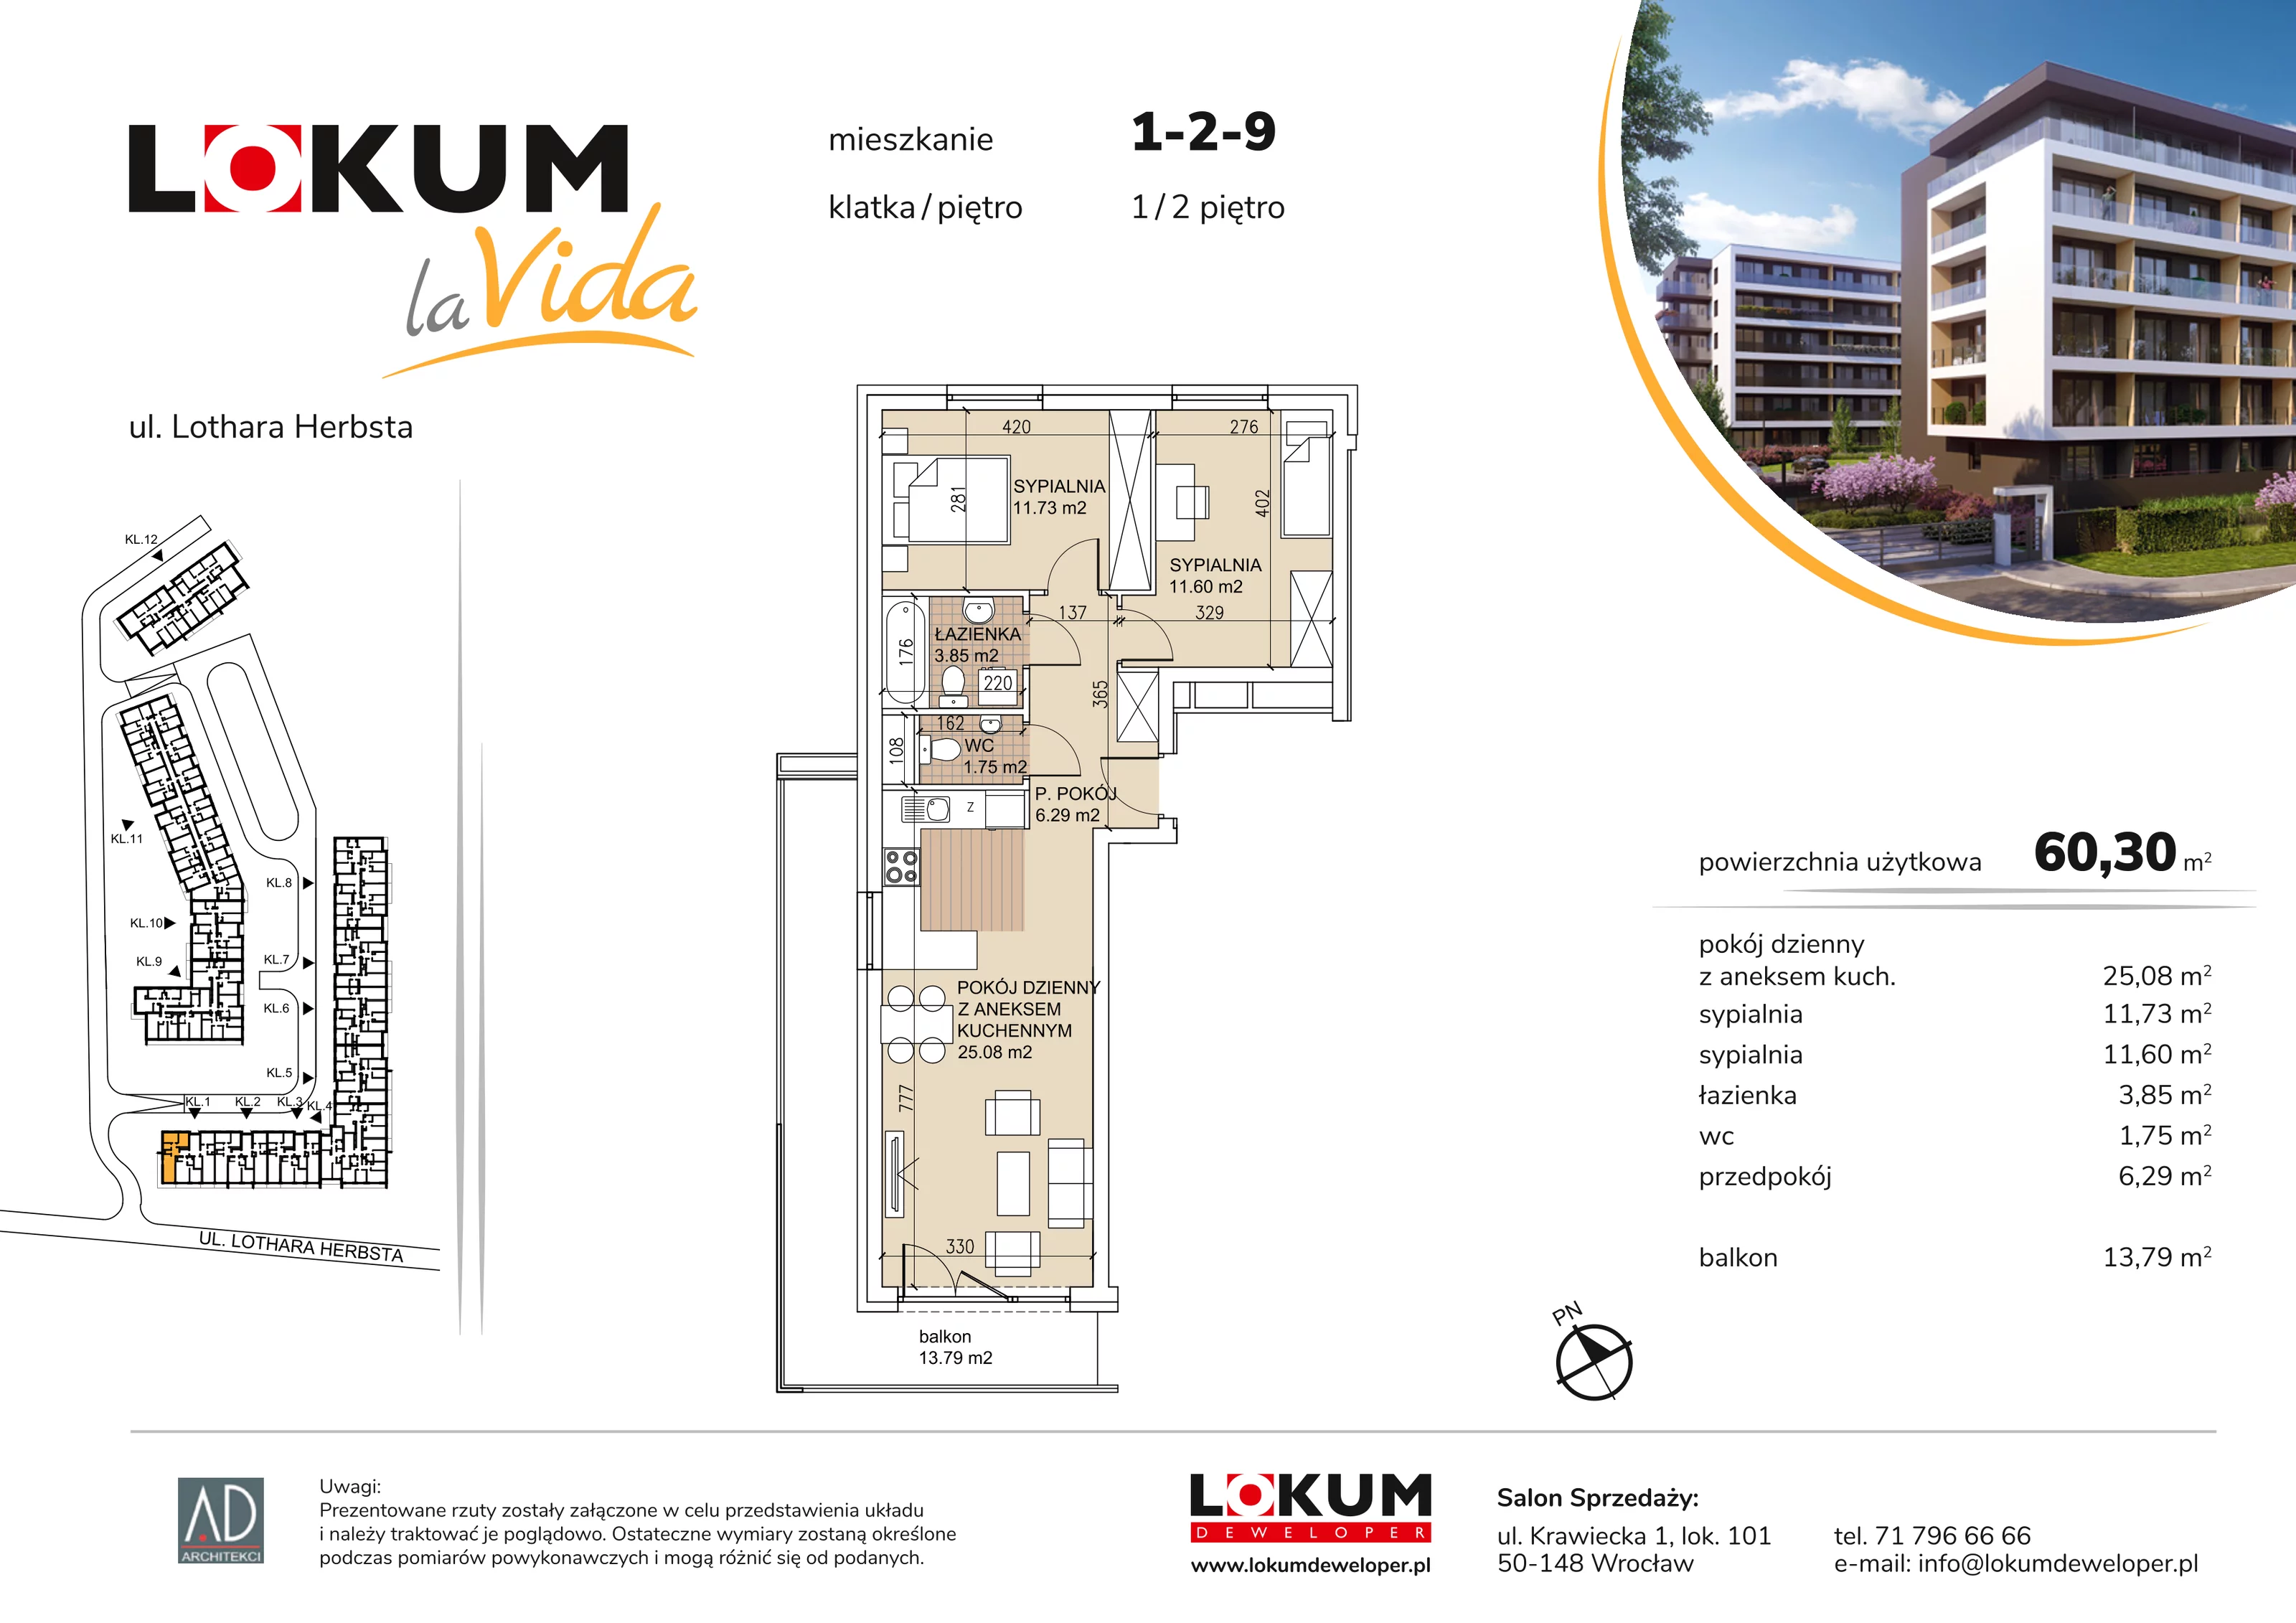 Mieszkanie 60,30 m², piętro 2, oferta nr 1-2-9, Lokum la Vida, Wrocław, Sołtysowice, ul. Lothara Herbsta